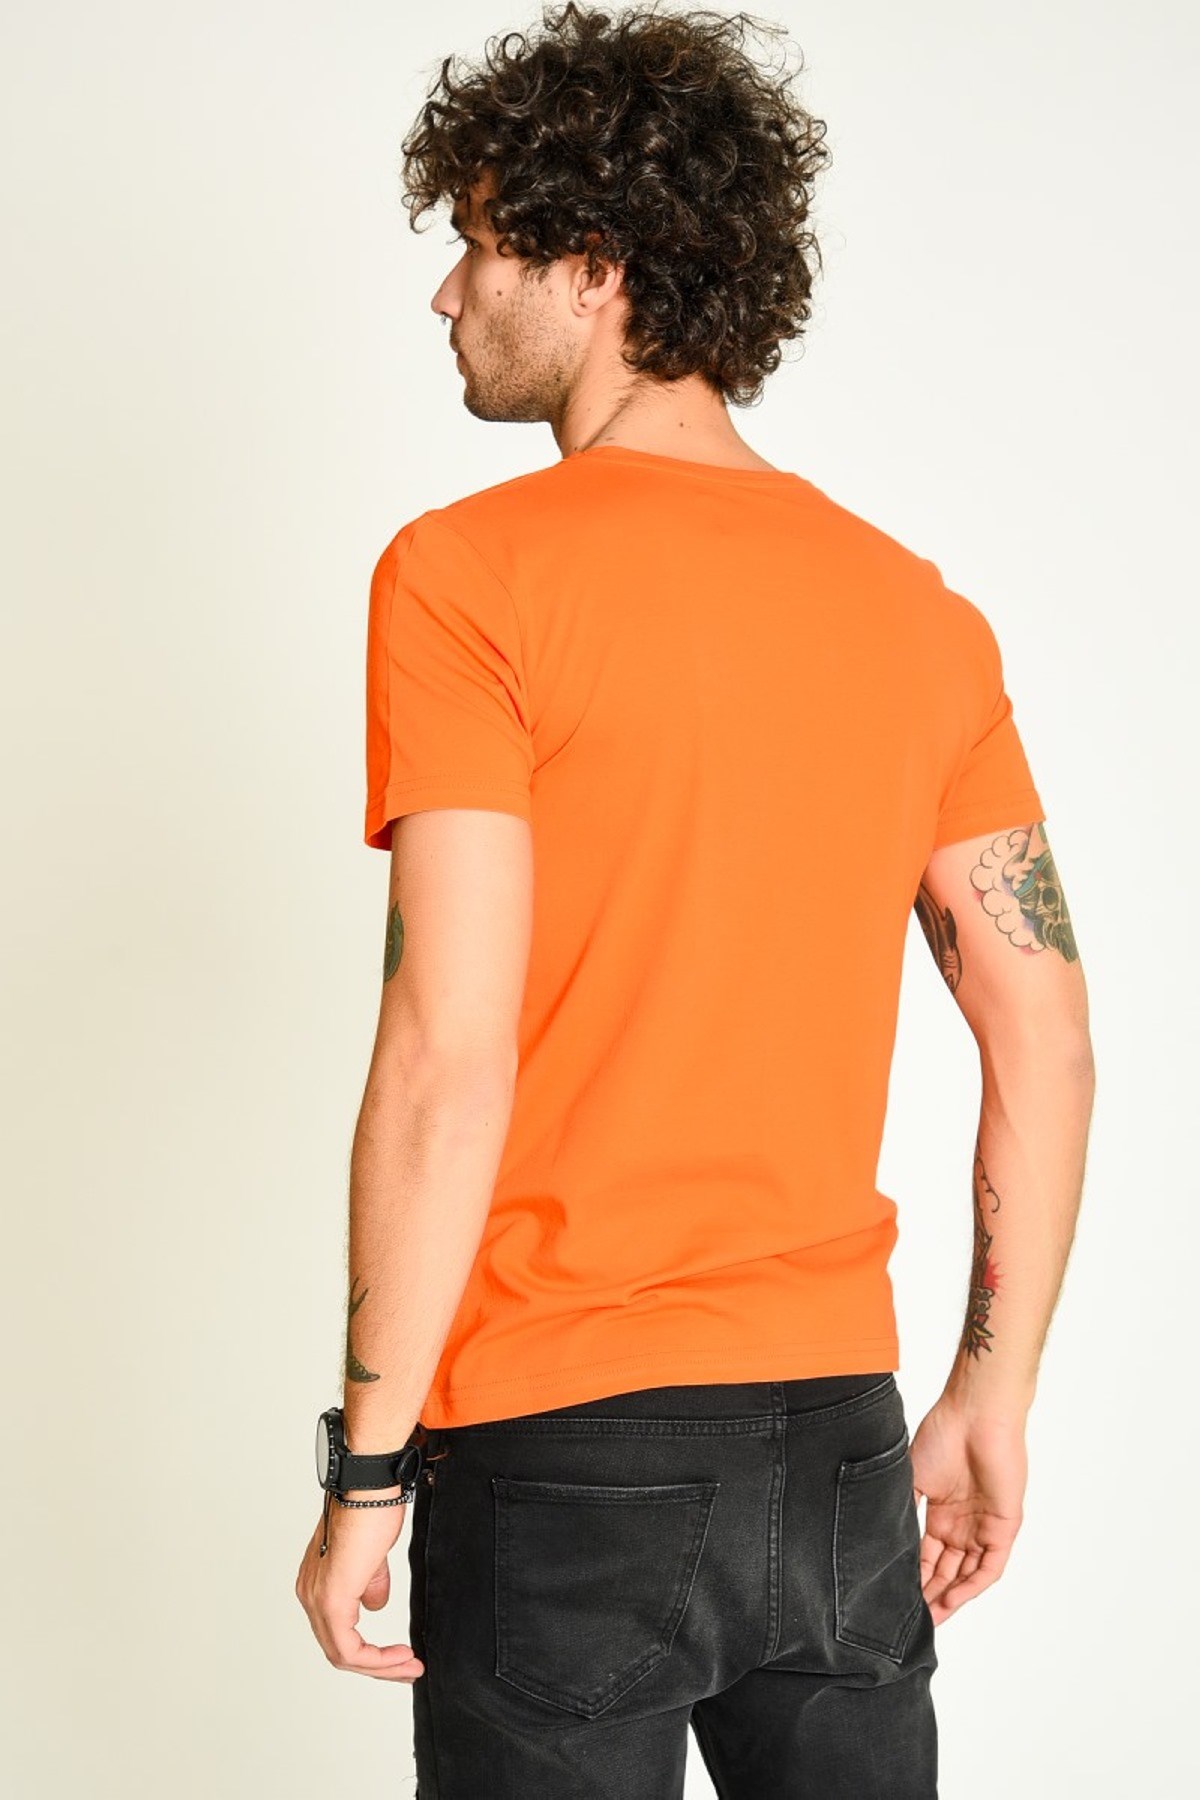 Önü Parçalı Bisiklet Yaka Turuncu Basic Erkek T-shirt